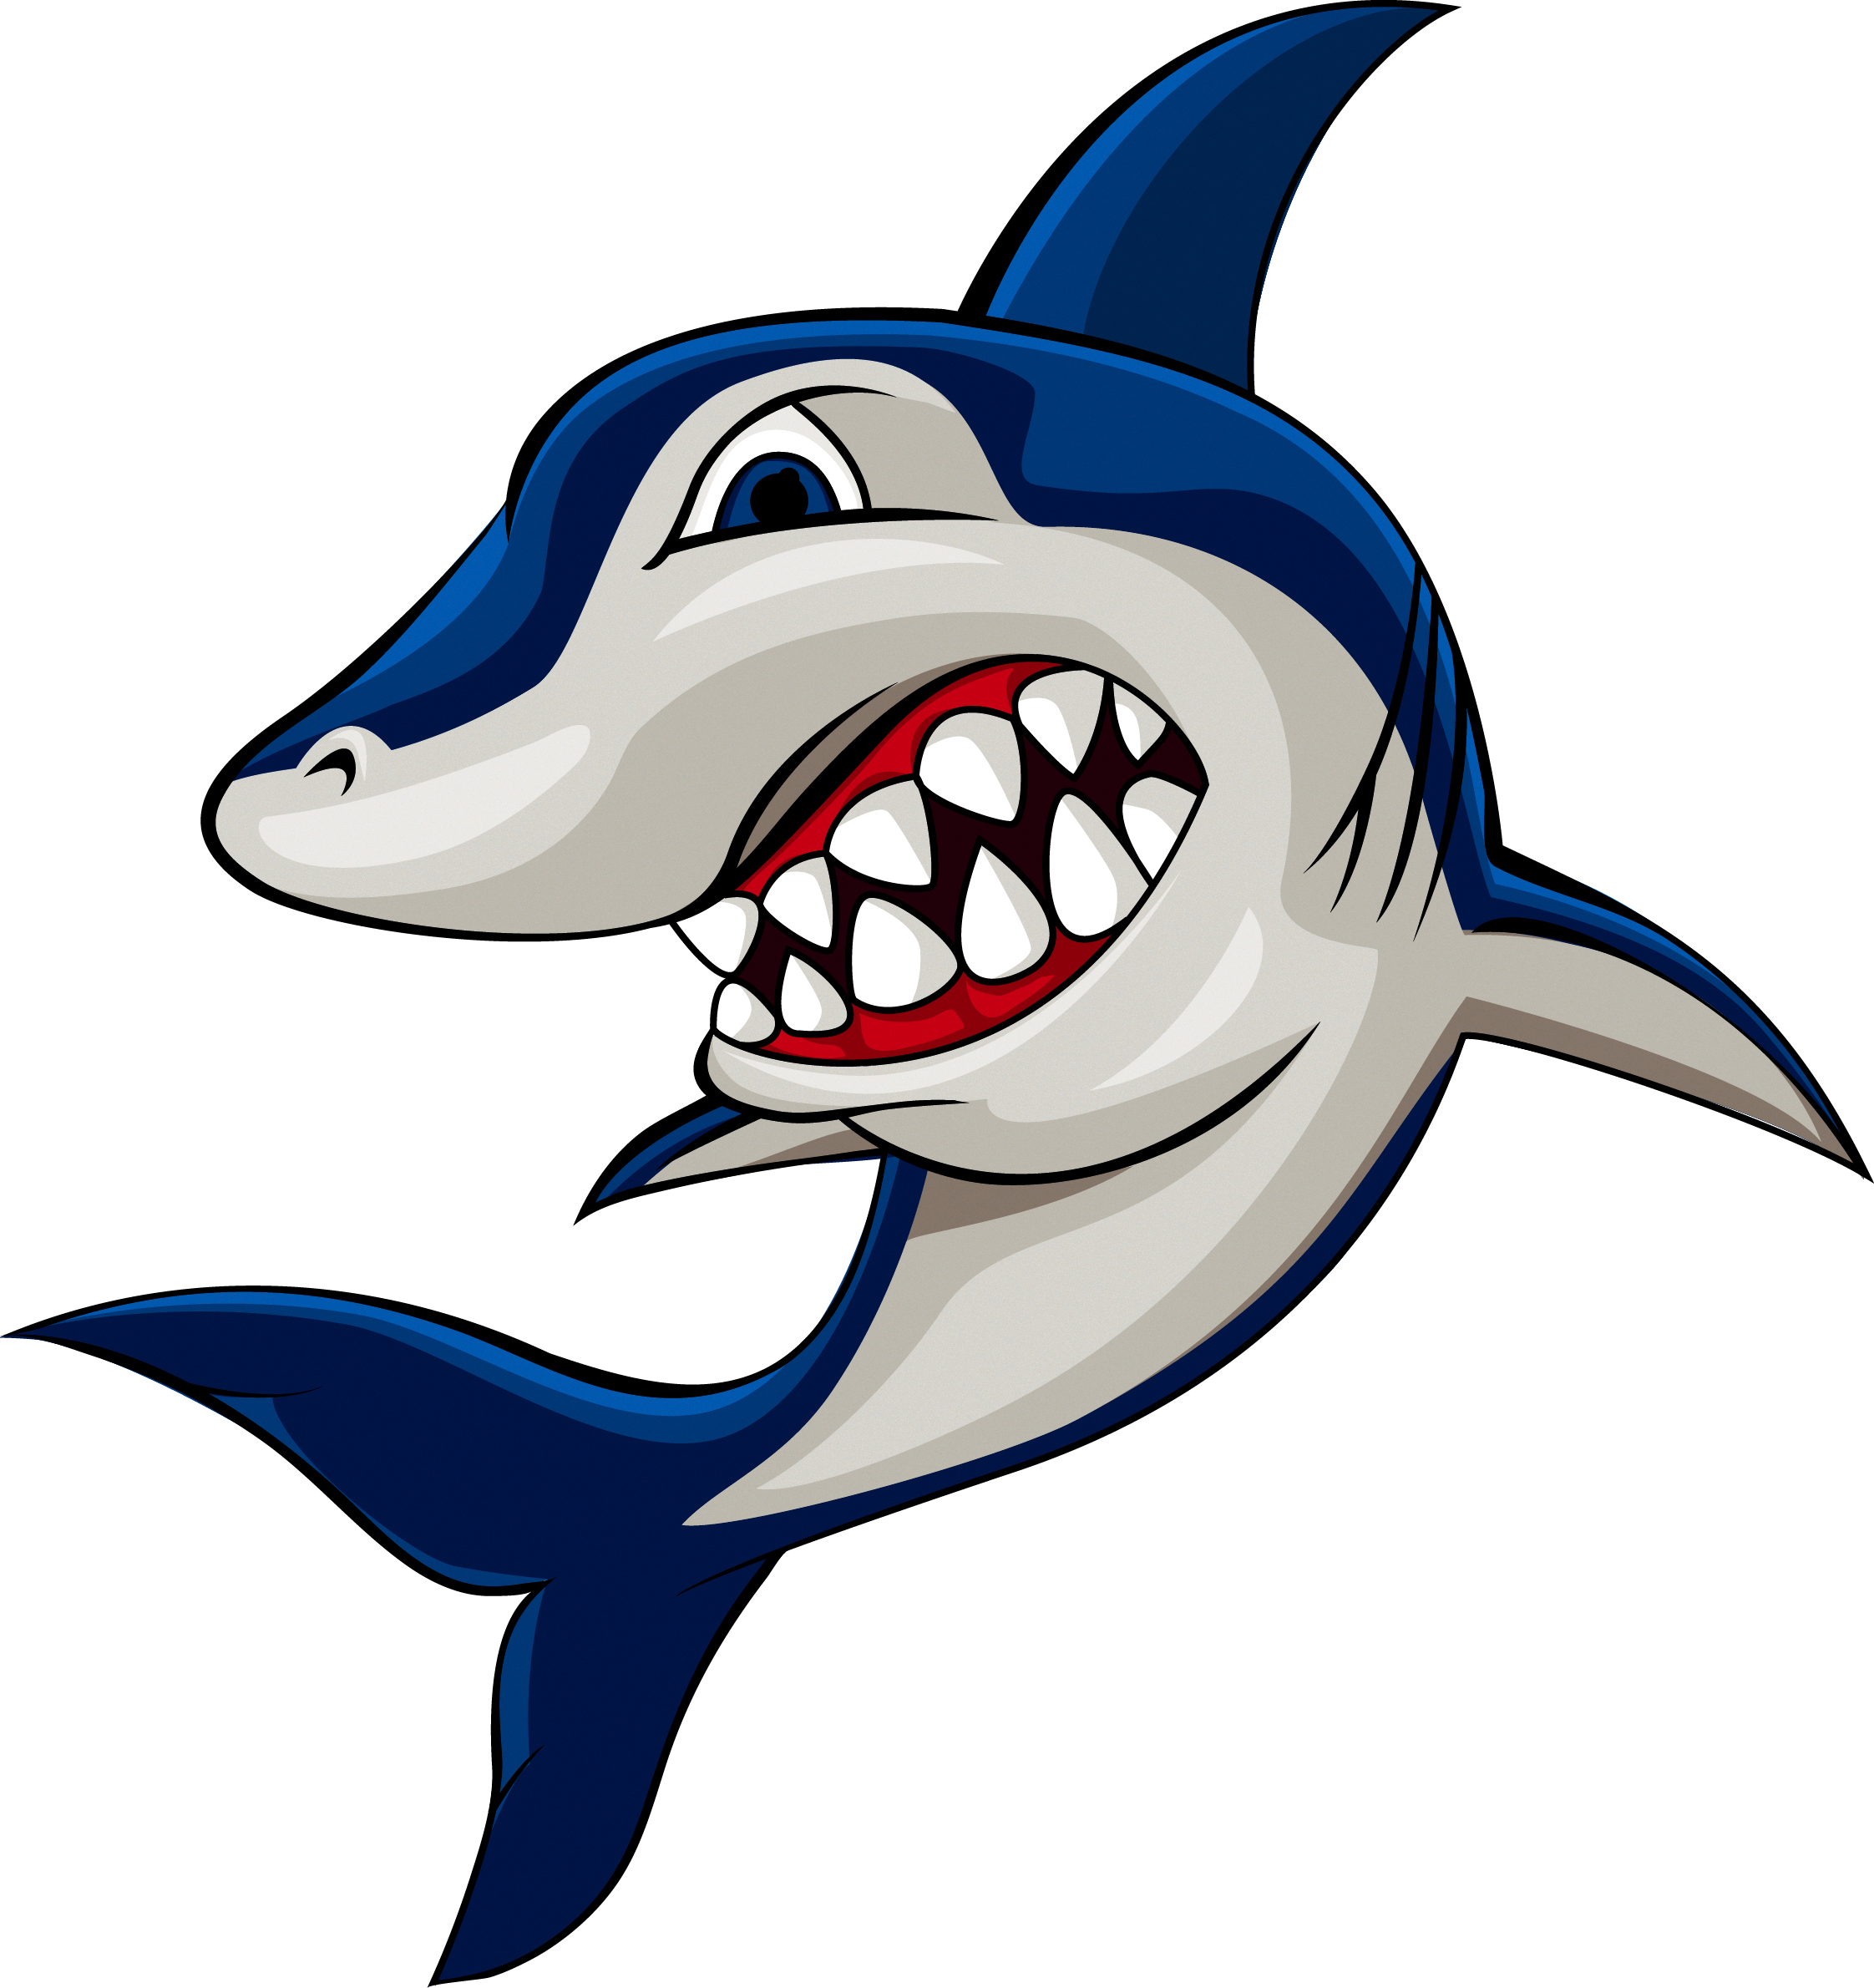 Dolphins clipart shark. Cartoon stock photography clip